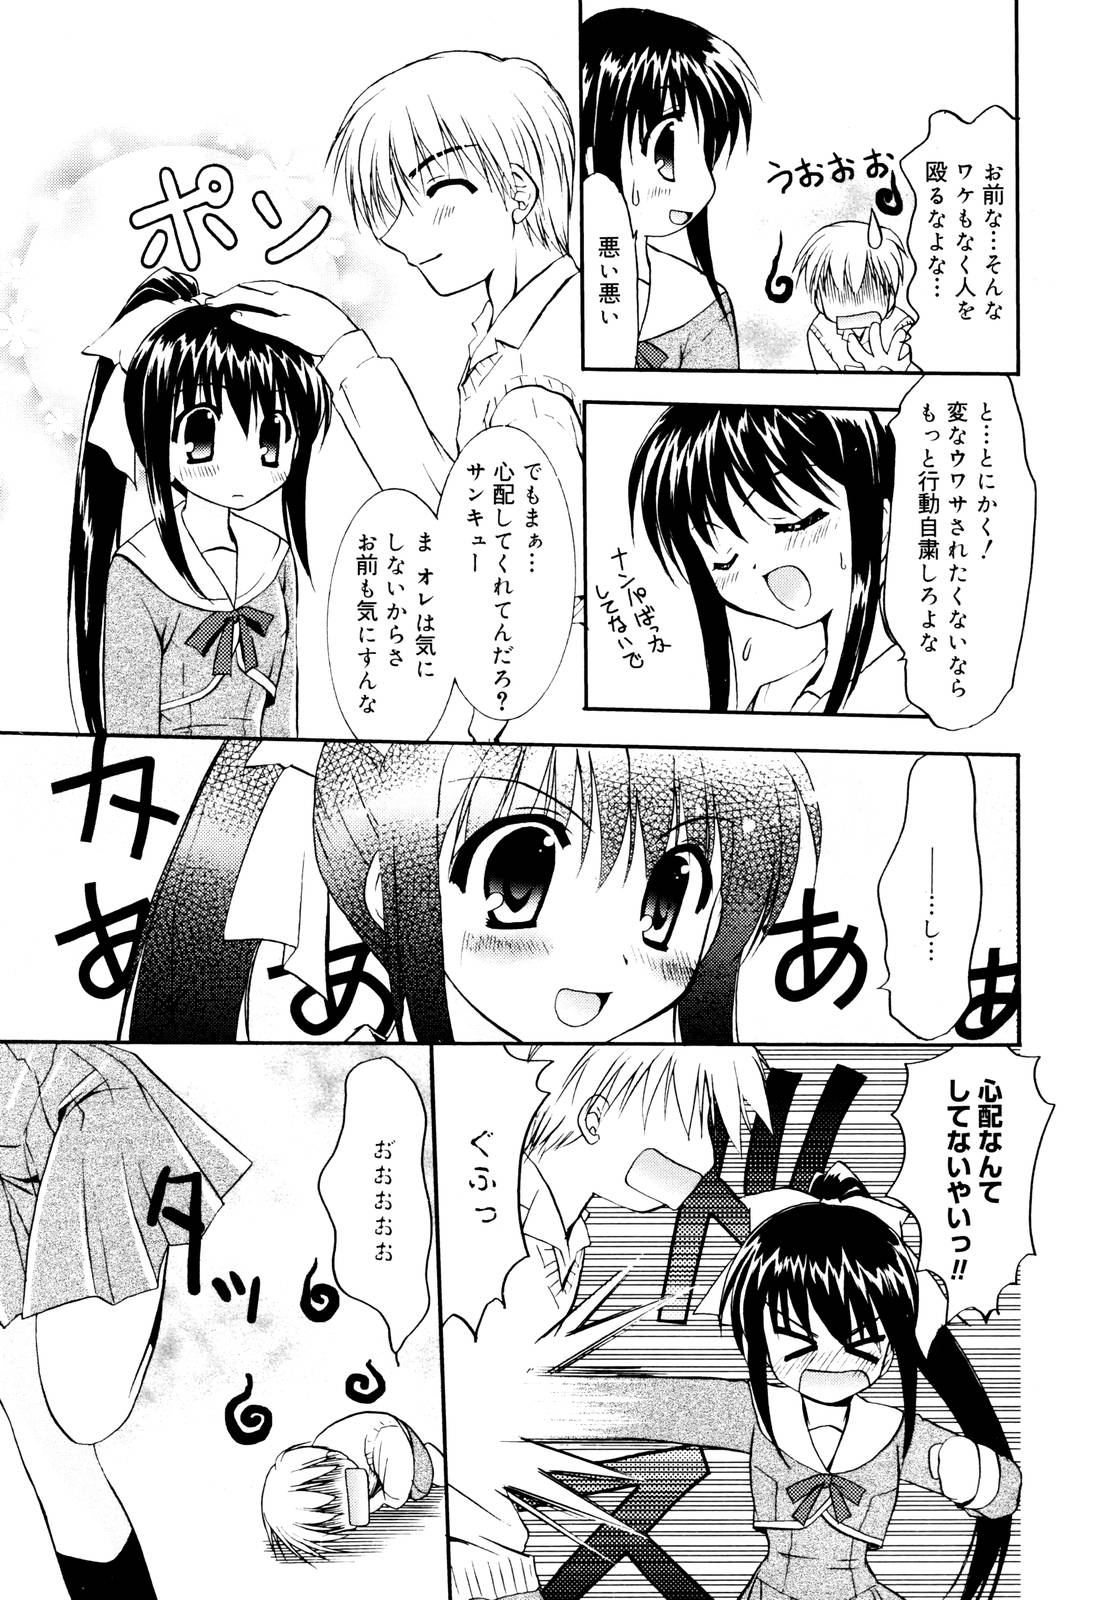 Manga Bangaichi 2006-01 page 27 full